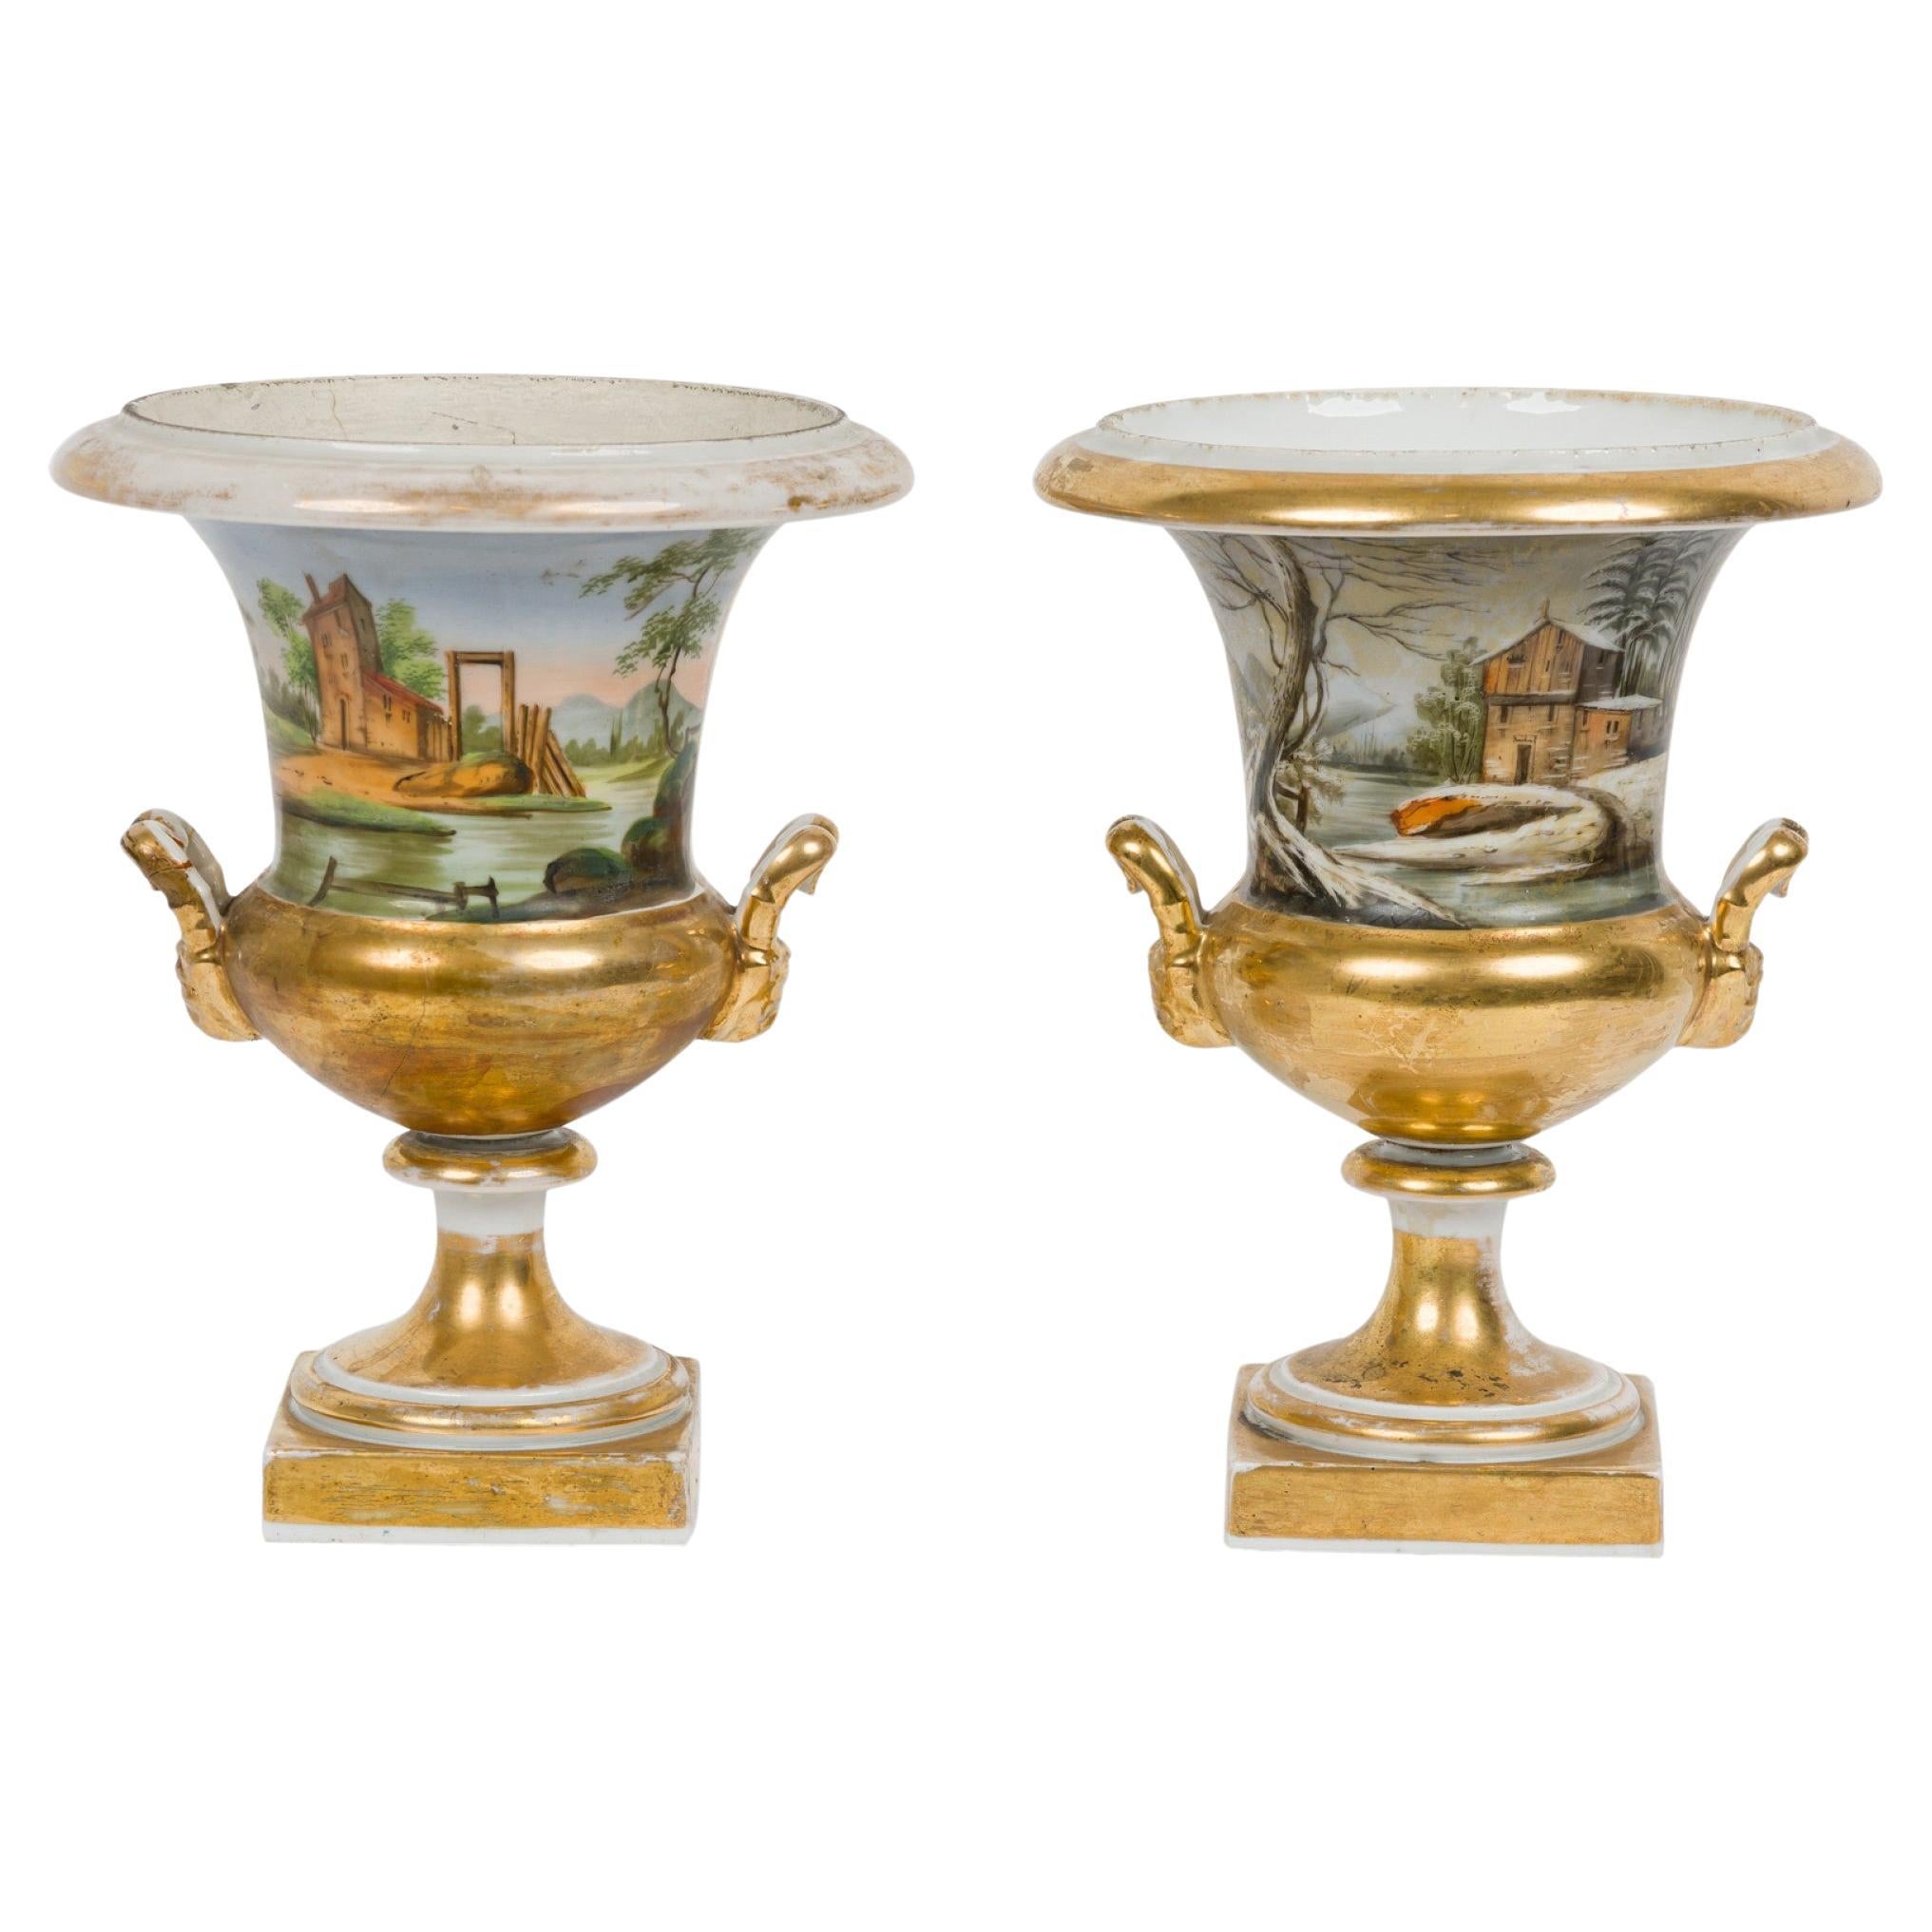 Paire d'urnes victoriennes françaises en porcelaine de Sèvre dorée et peinte